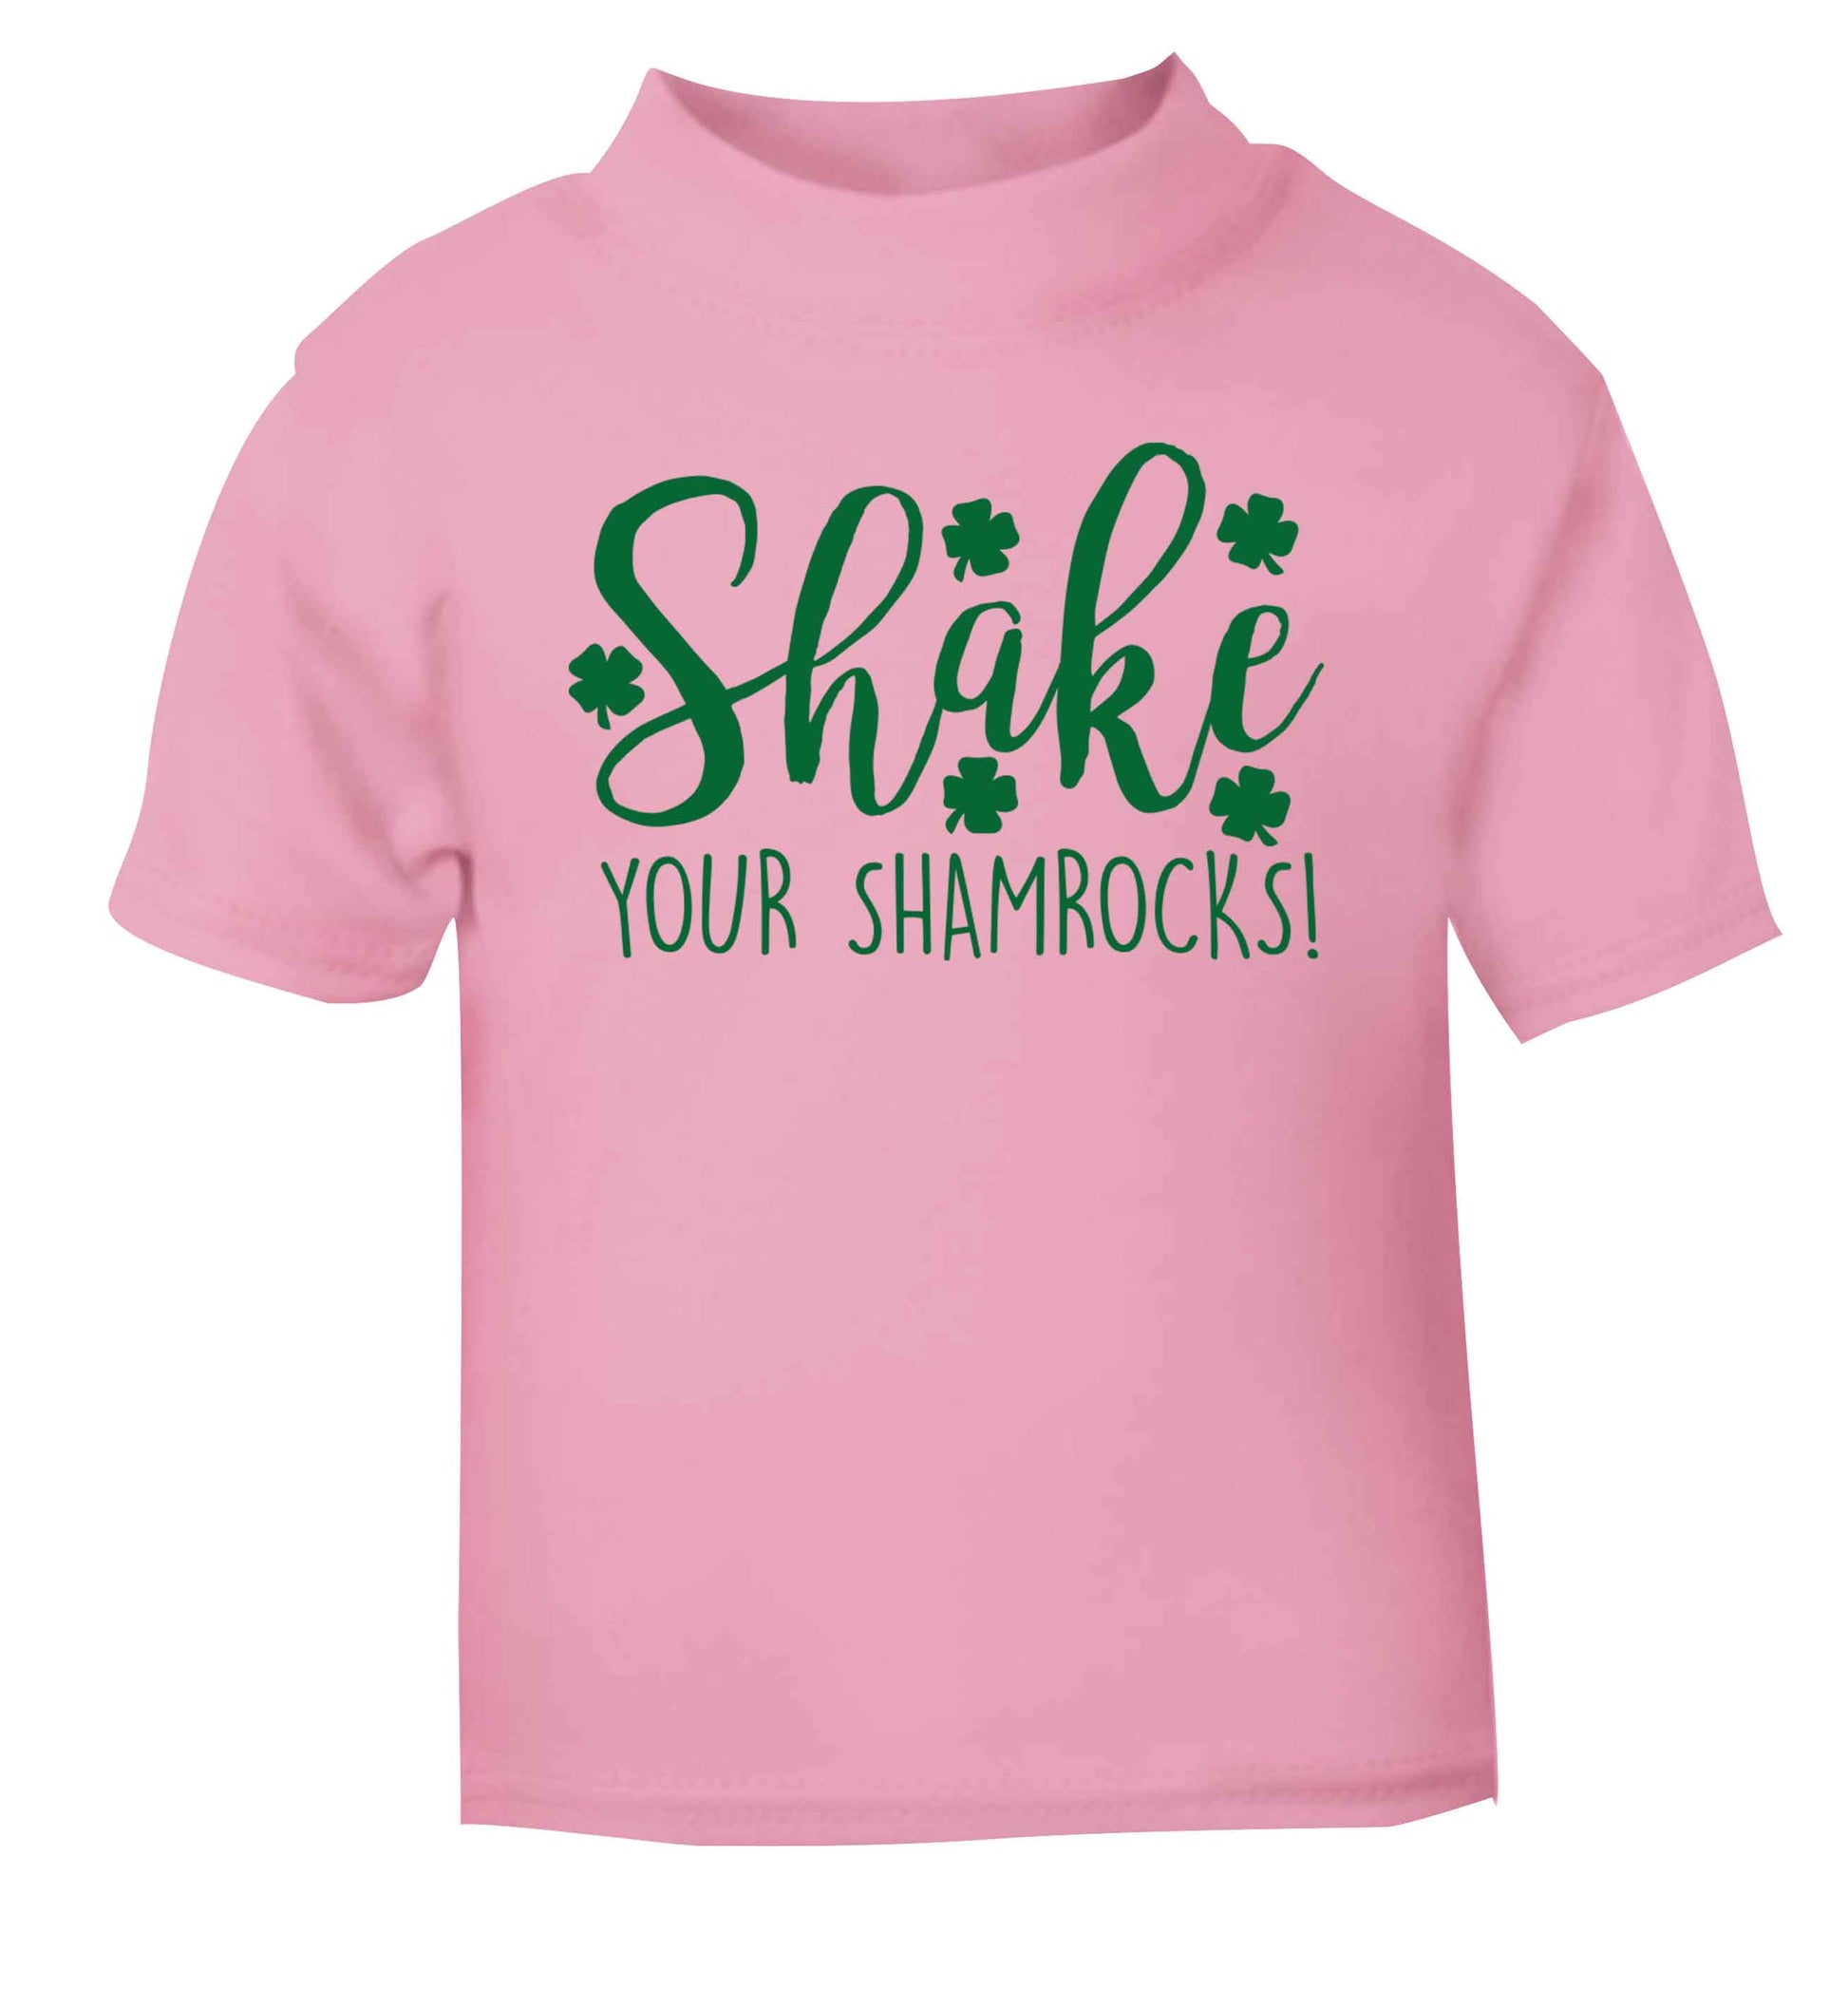 Shake your shamrocks light pink baby toddler Tshirt 2 Years